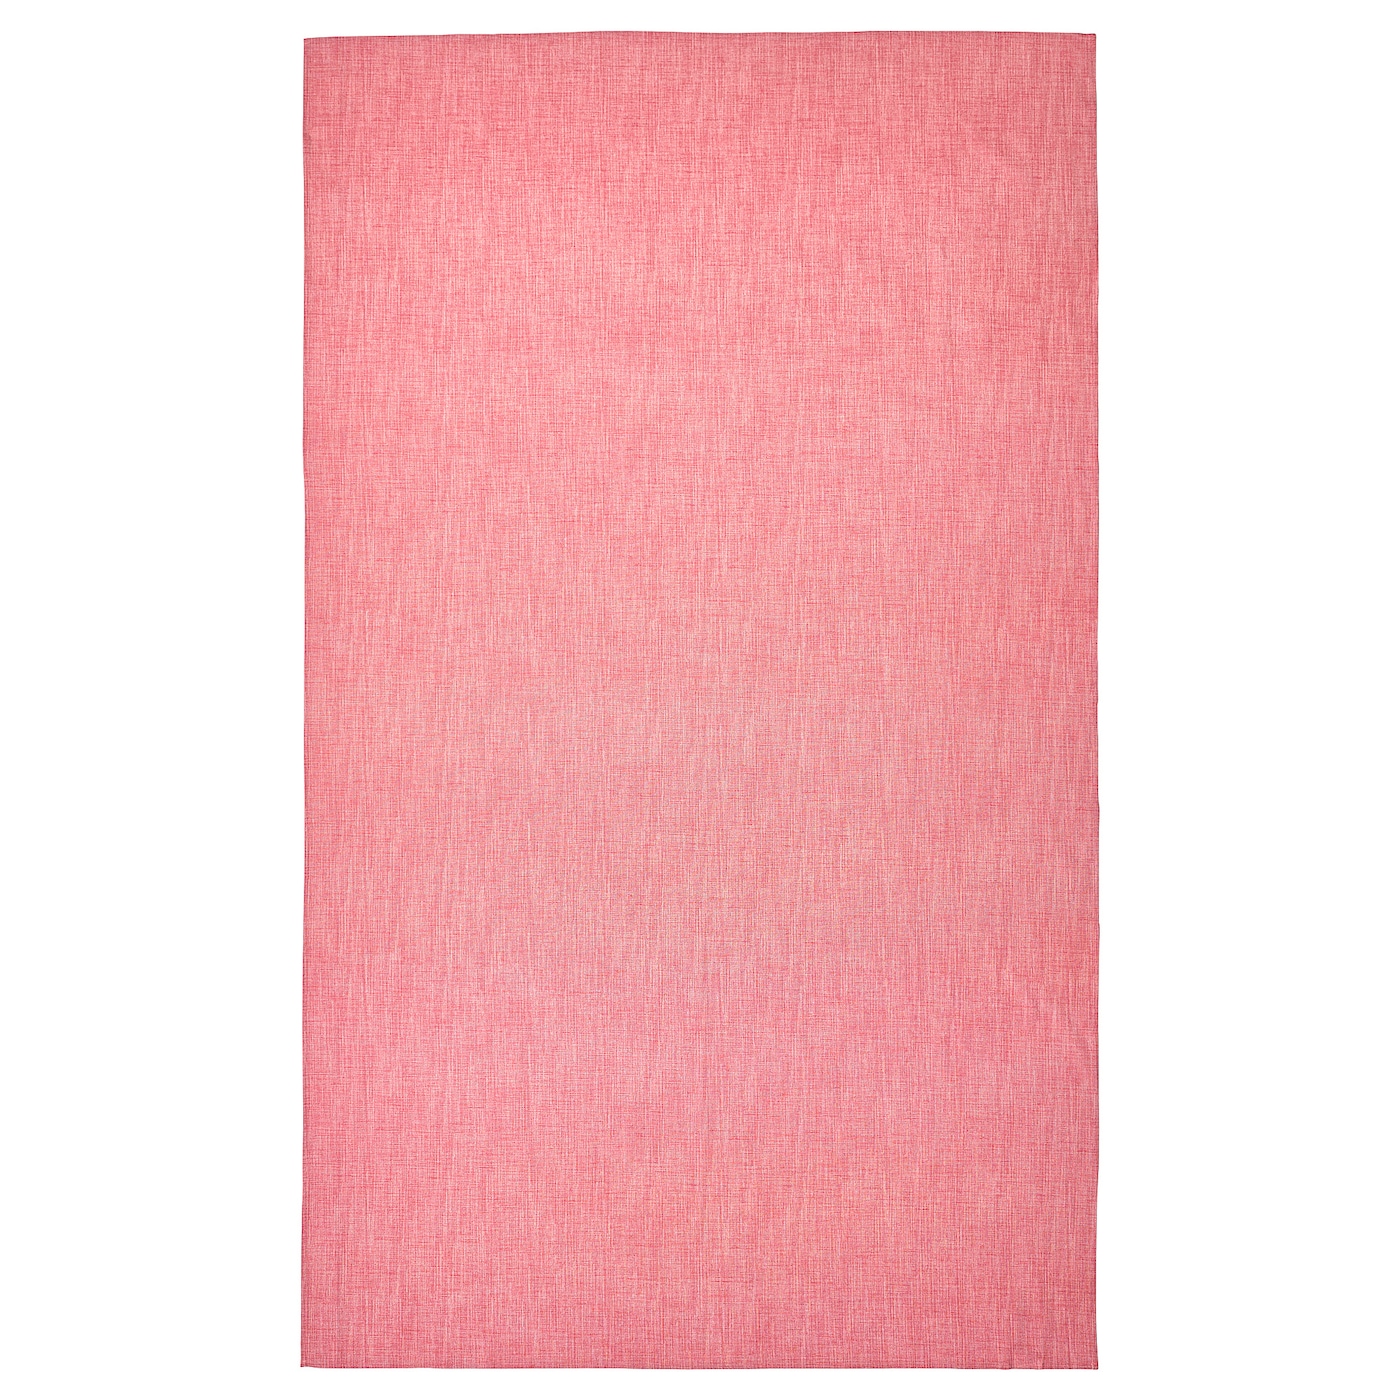 SVARTSENAP Скатерть, розовый, 145x240 см IKEA